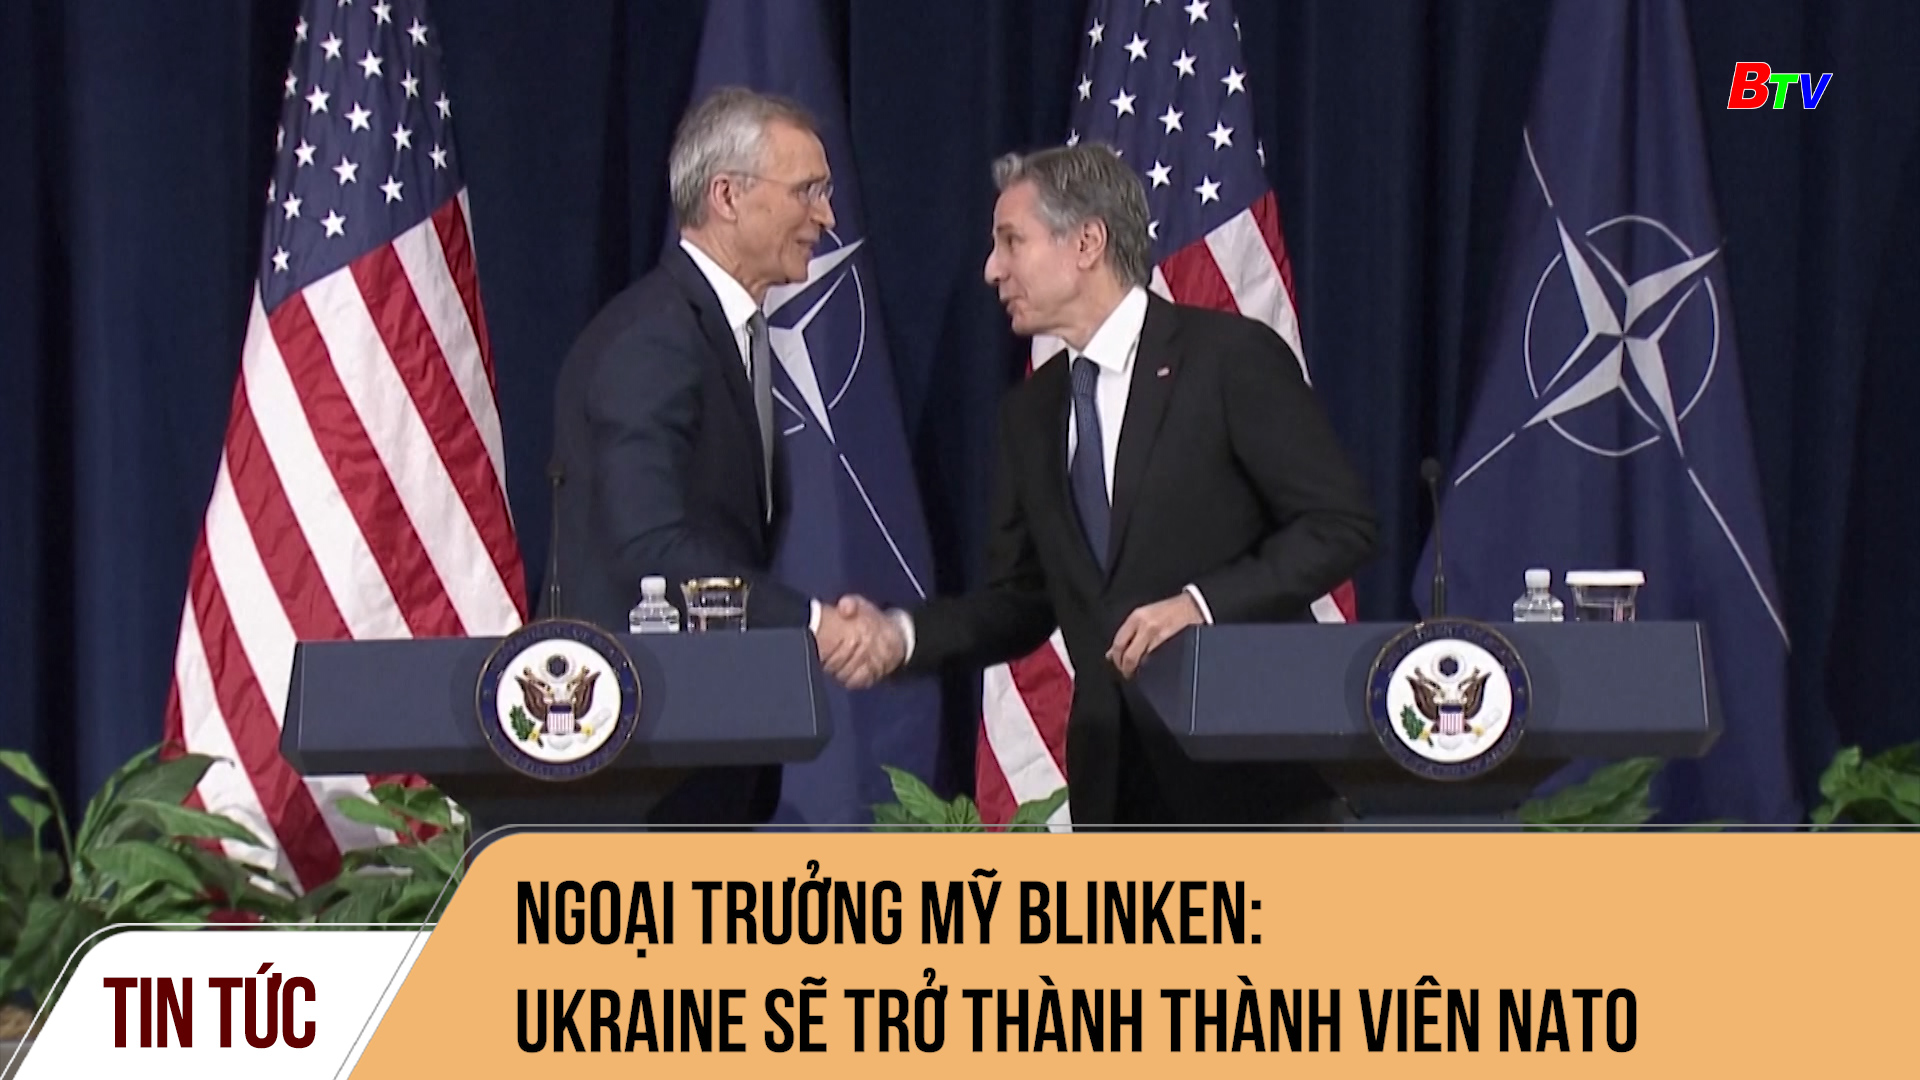 Ngoại trưởng Mỹ Blinken: Ukraine sẽ trở thành thành viên NATO